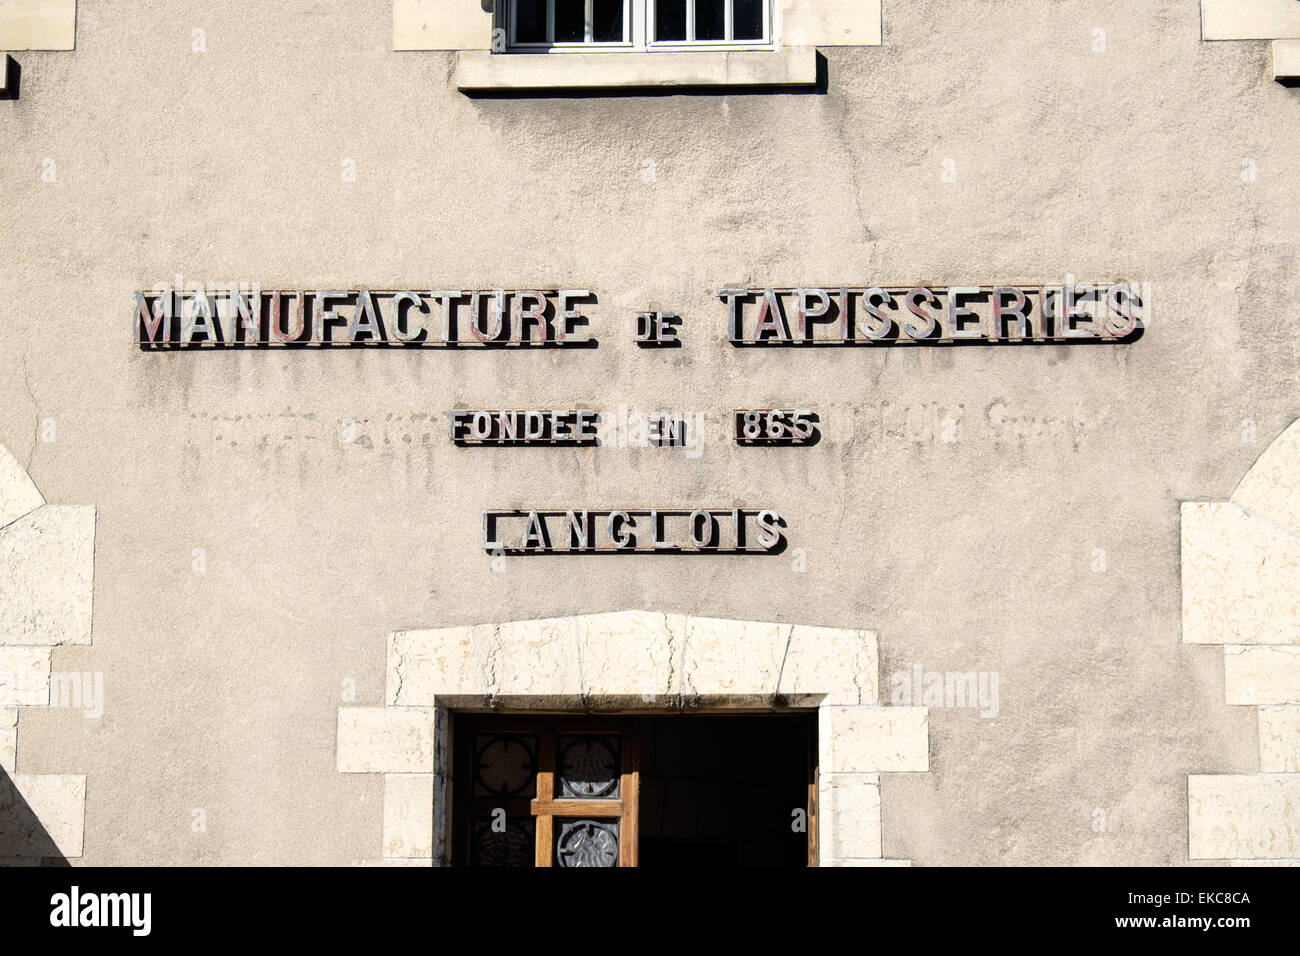 Sign on building in Blois 'Manufacture de Tapisseries, Fondee en 1865, Langlois', Loir-et-Cher, France Stock Photo